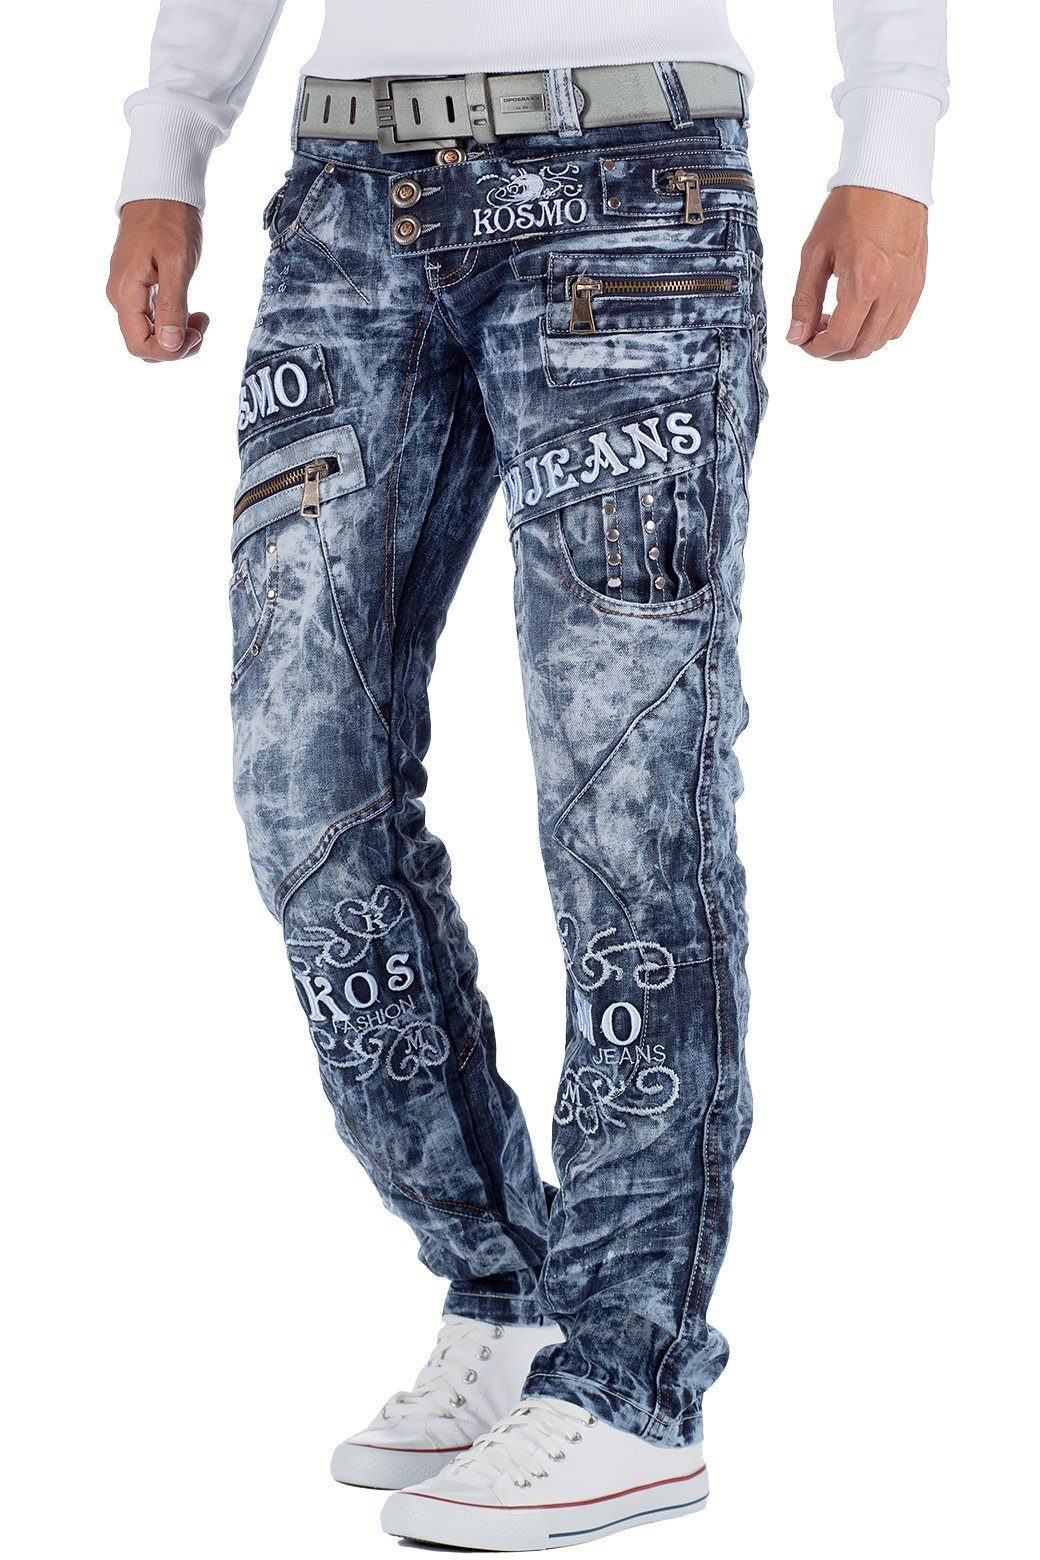 Markante 5-Pocket-Jeans Auffällige Hose und Verzierungen BA-KM051 Herren Waschnung blau Kosmo Lupo